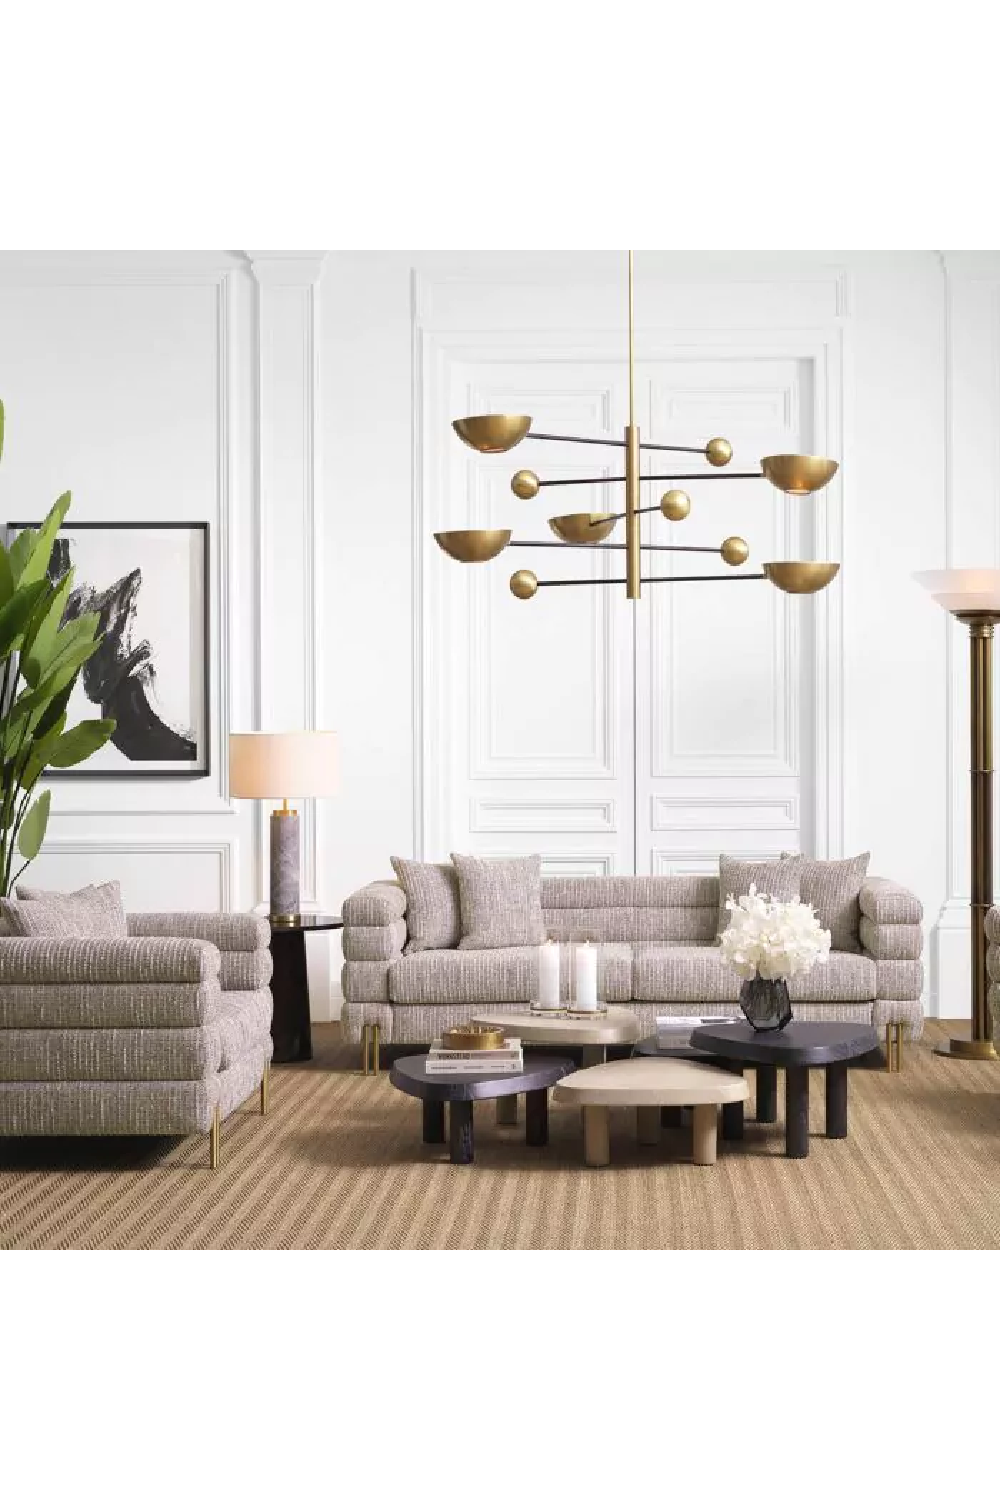 Modern Art Deco Lounge Chair | Eichholtz York | Oroa.com